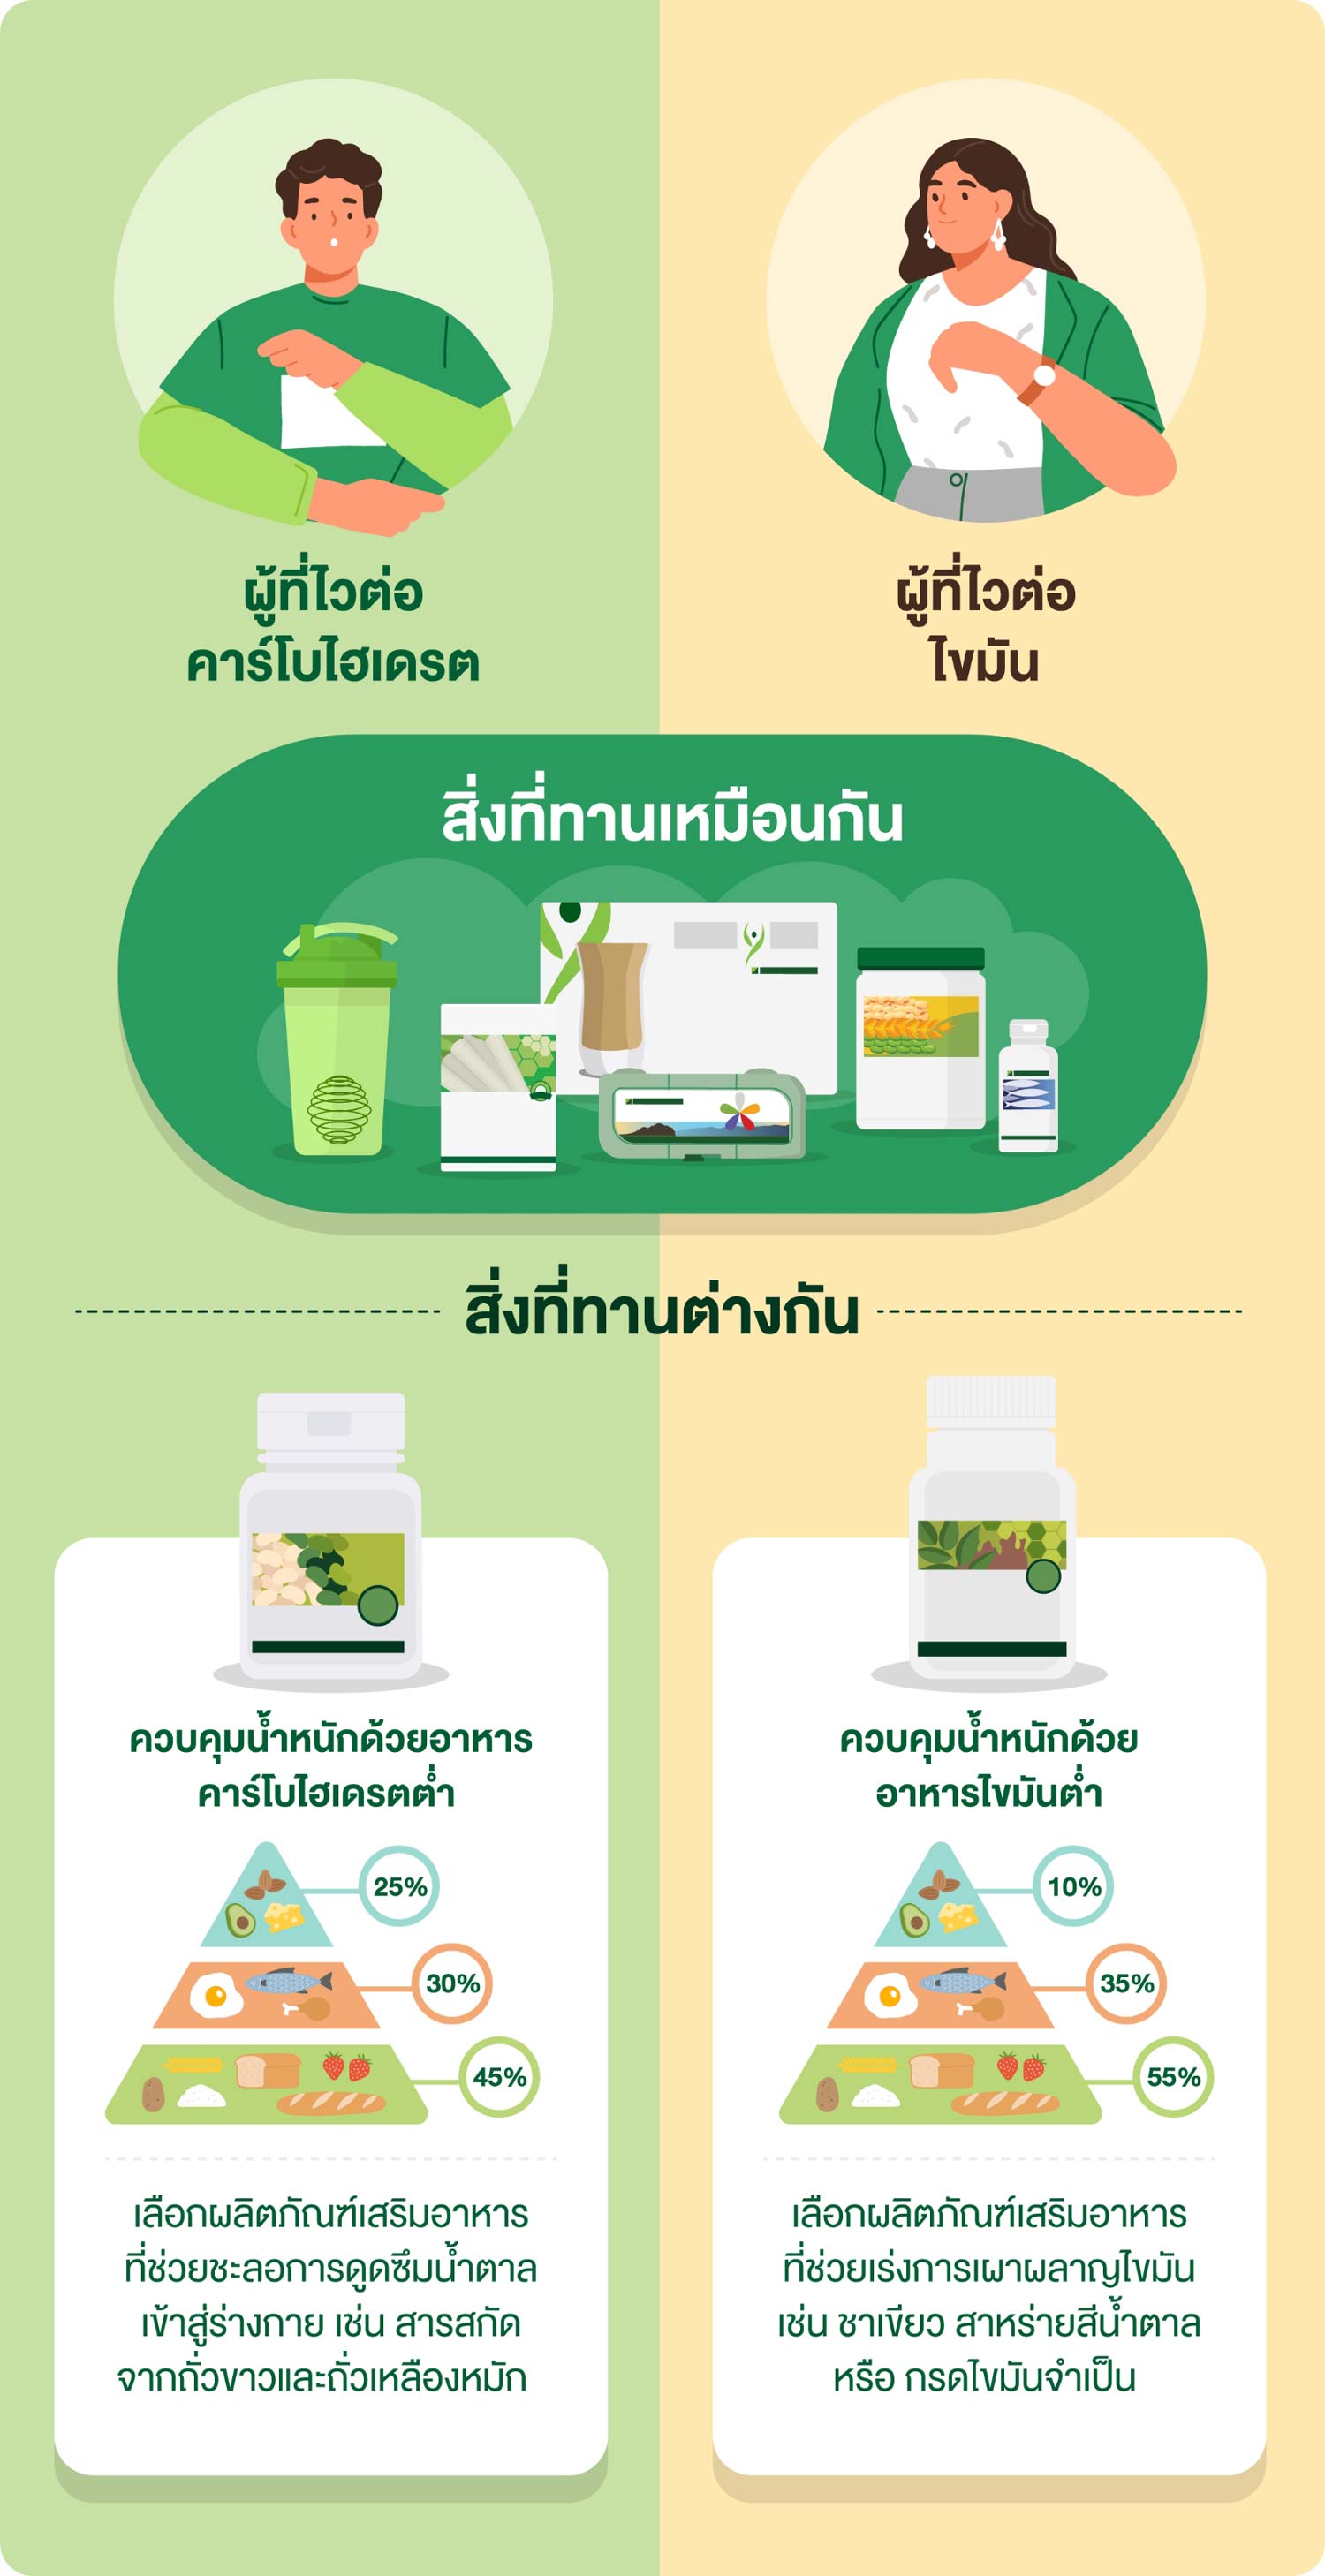 ลดน้ำหนักทั้งที ลดให้ถูกวิธี | Amway Thailand Site